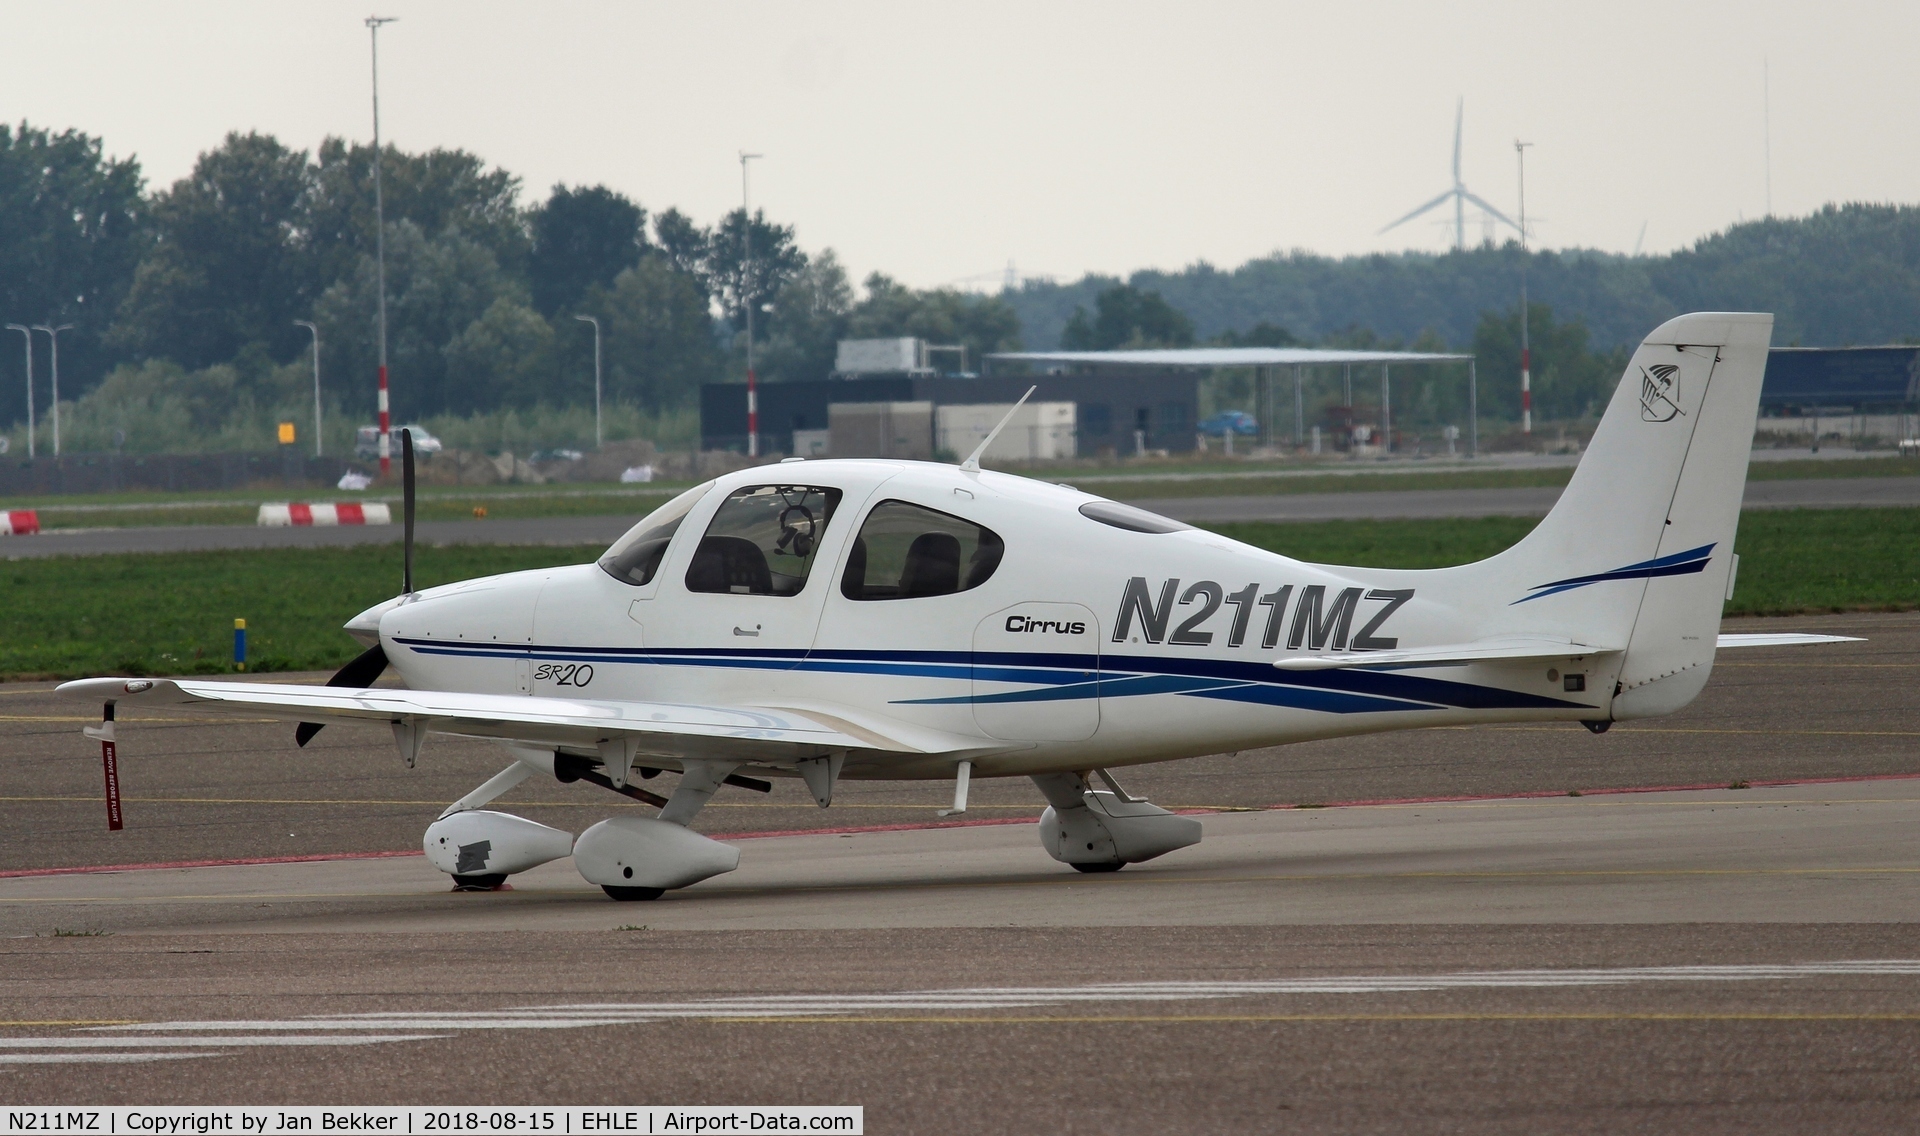 N211MZ, 2003 Cirrus SR20 C/N 1340, Lelystad Airport